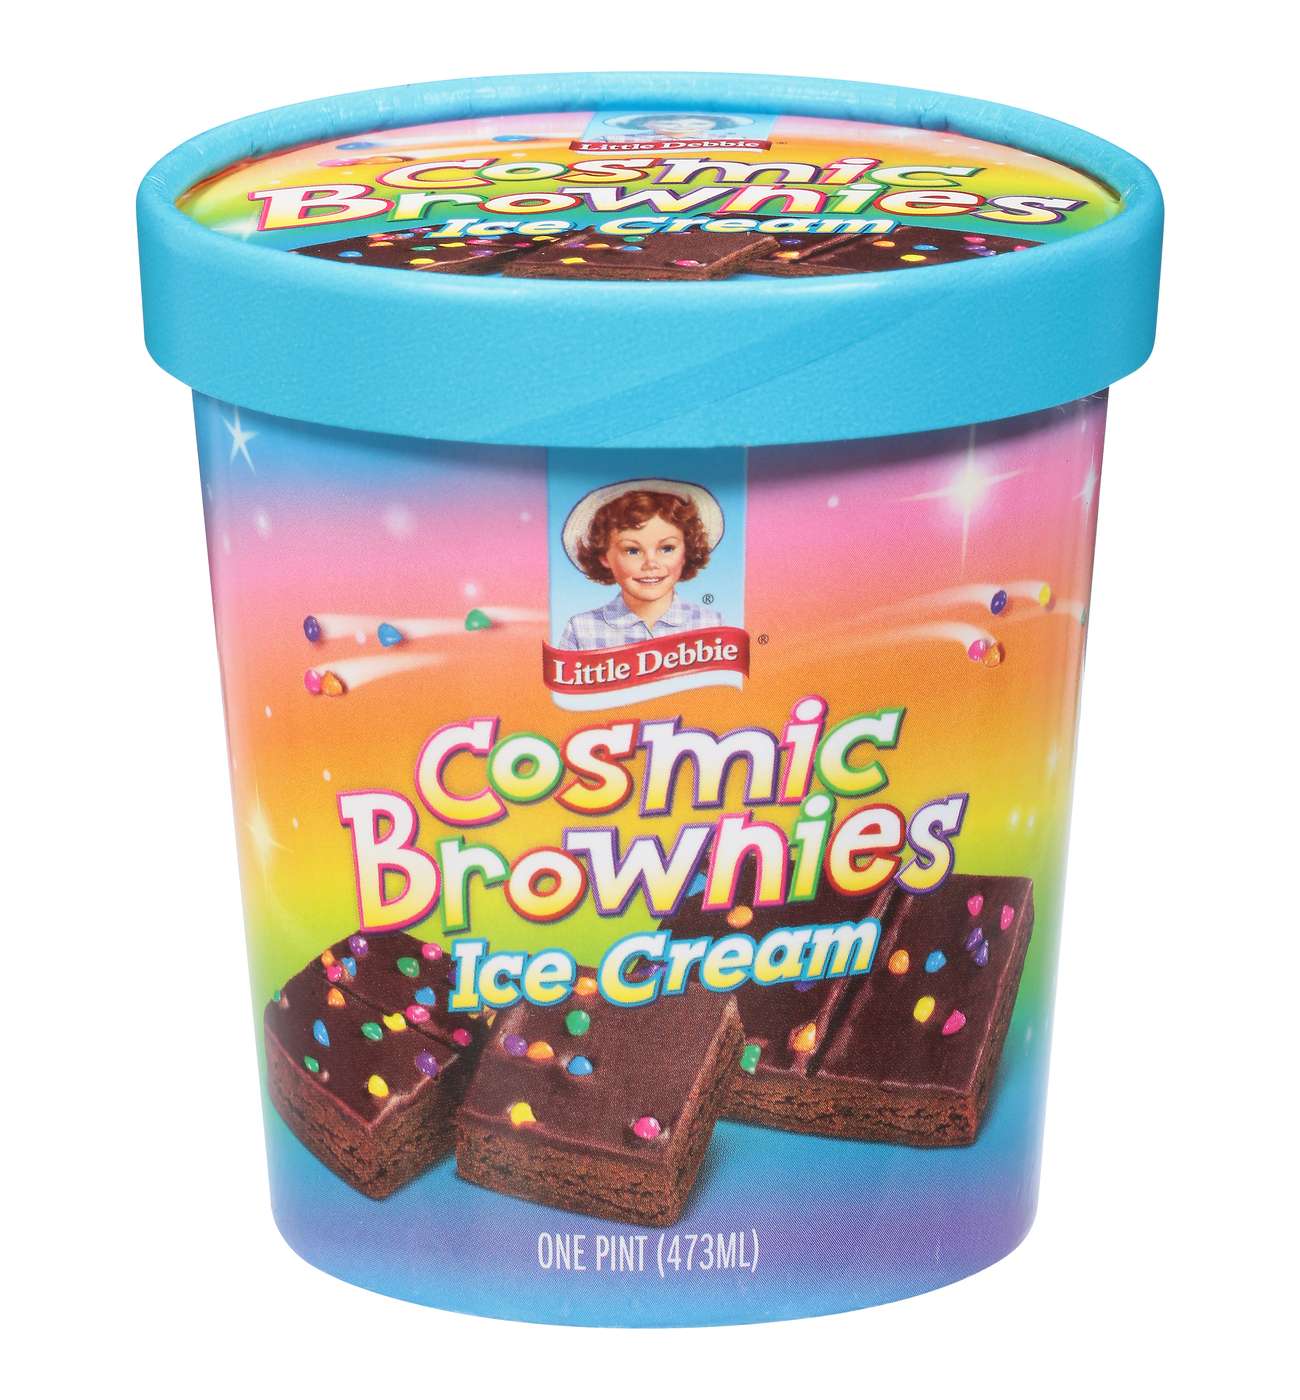 Little Debbie Cosmic Brownie Ice Cream Pint; image 1 of 2